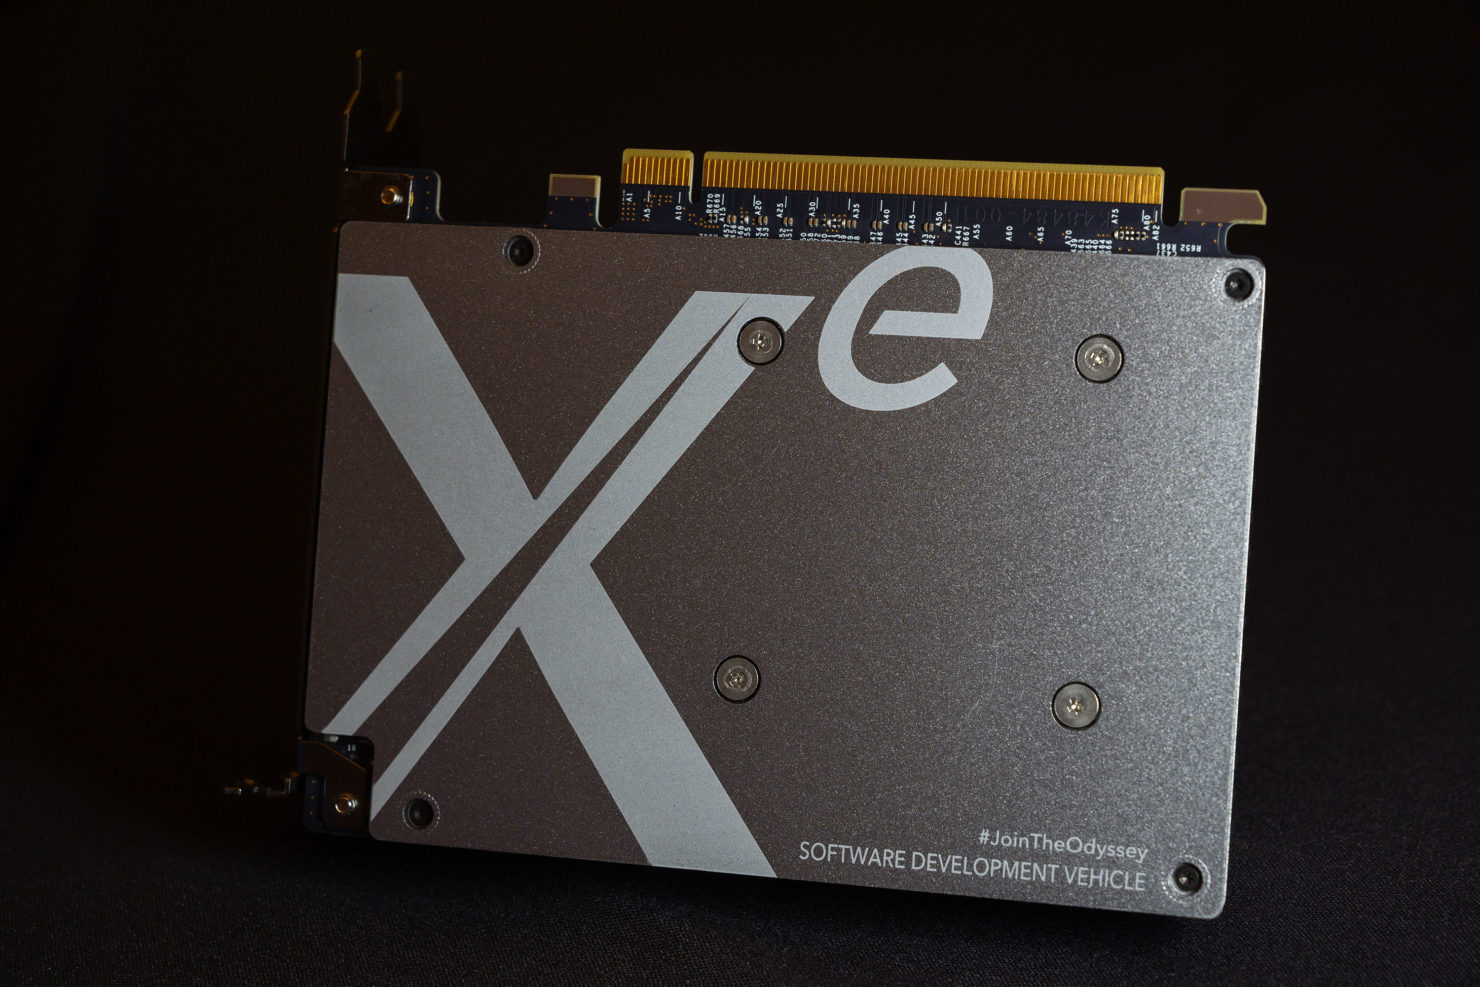 Intel впервые показала внешний вид своей видеокарты Xe DG1